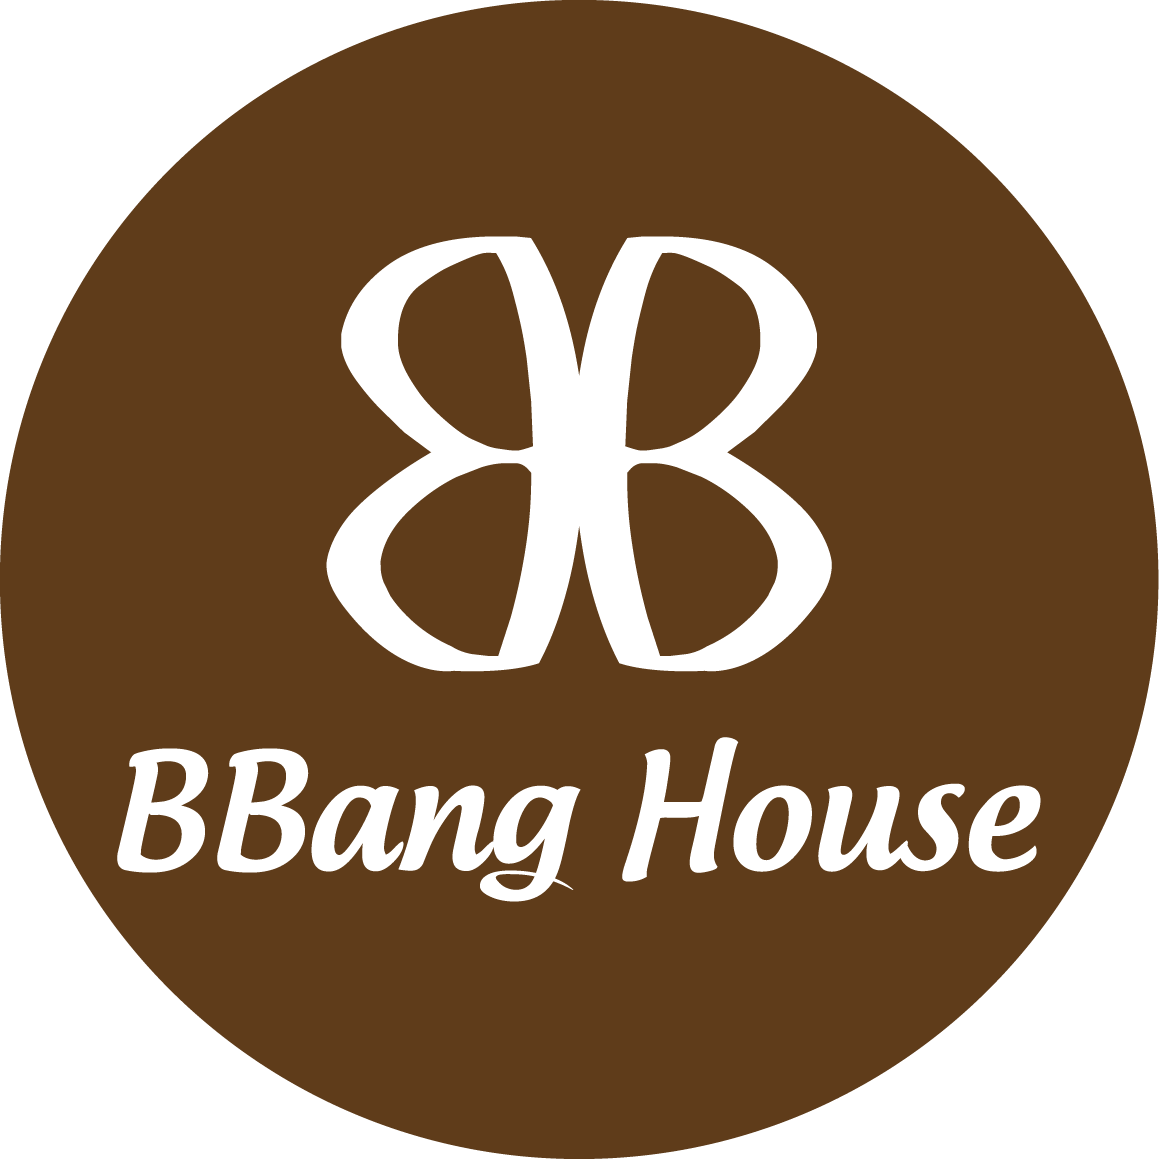 BBang House - Tiệm Bánh & Cafe